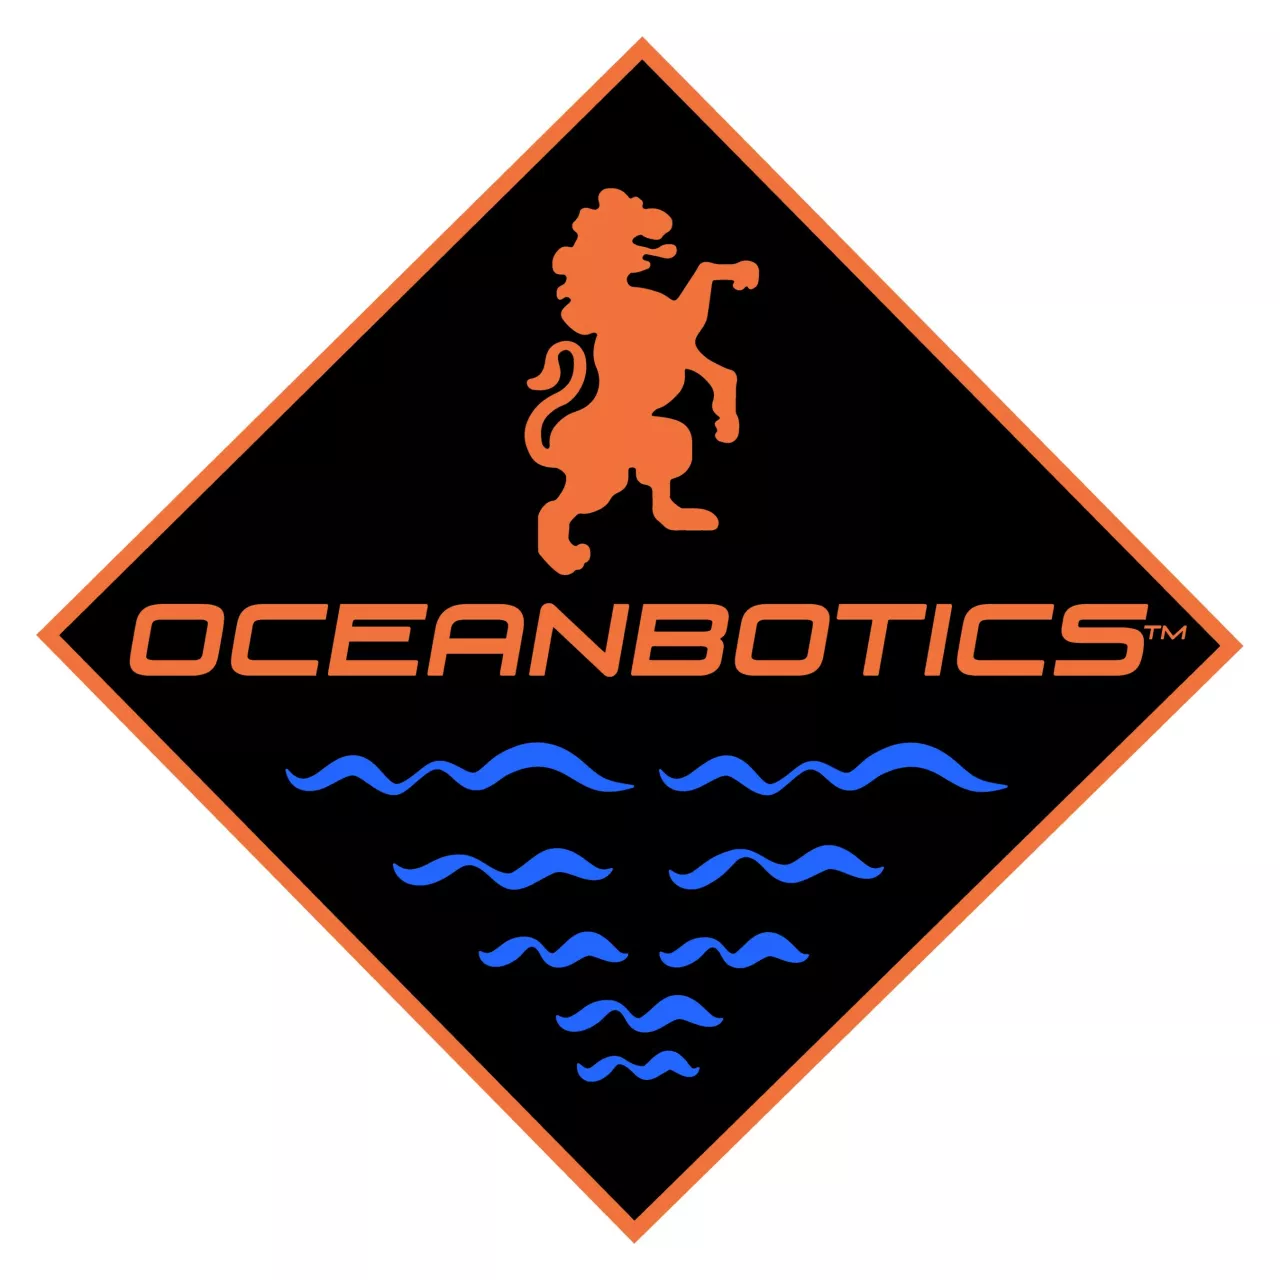 Oceanbotics Inc. logo img#2